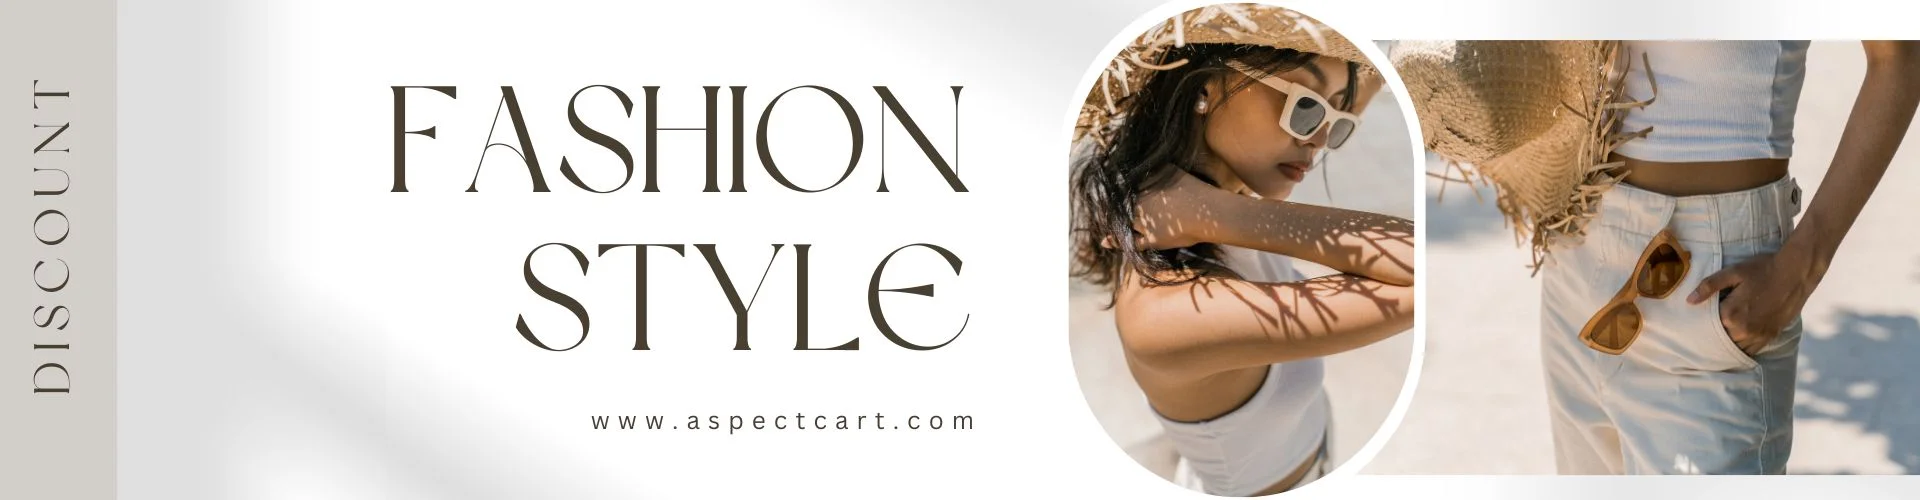 Banner di un negozio di moda online che presenta abbigliamento e accessori moderni